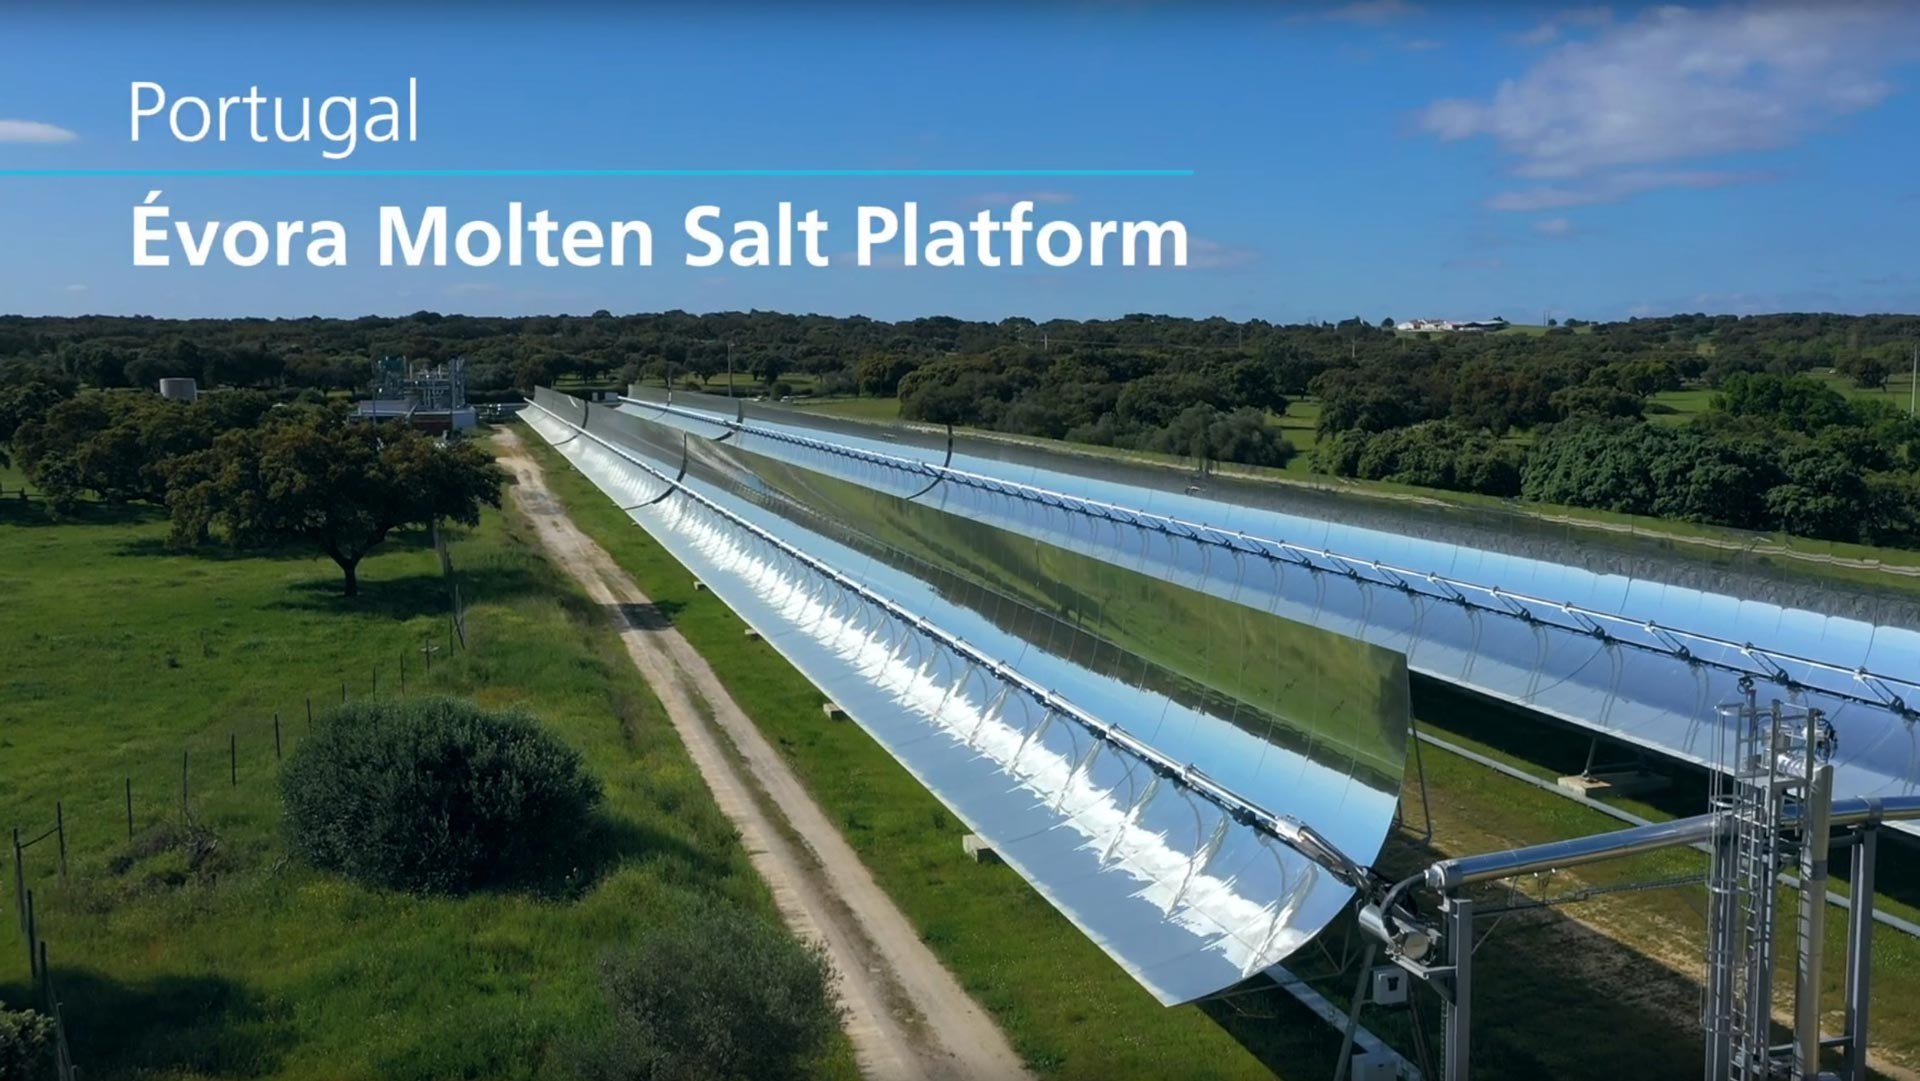 Video still: Evora Molten Salt Platform EMSP